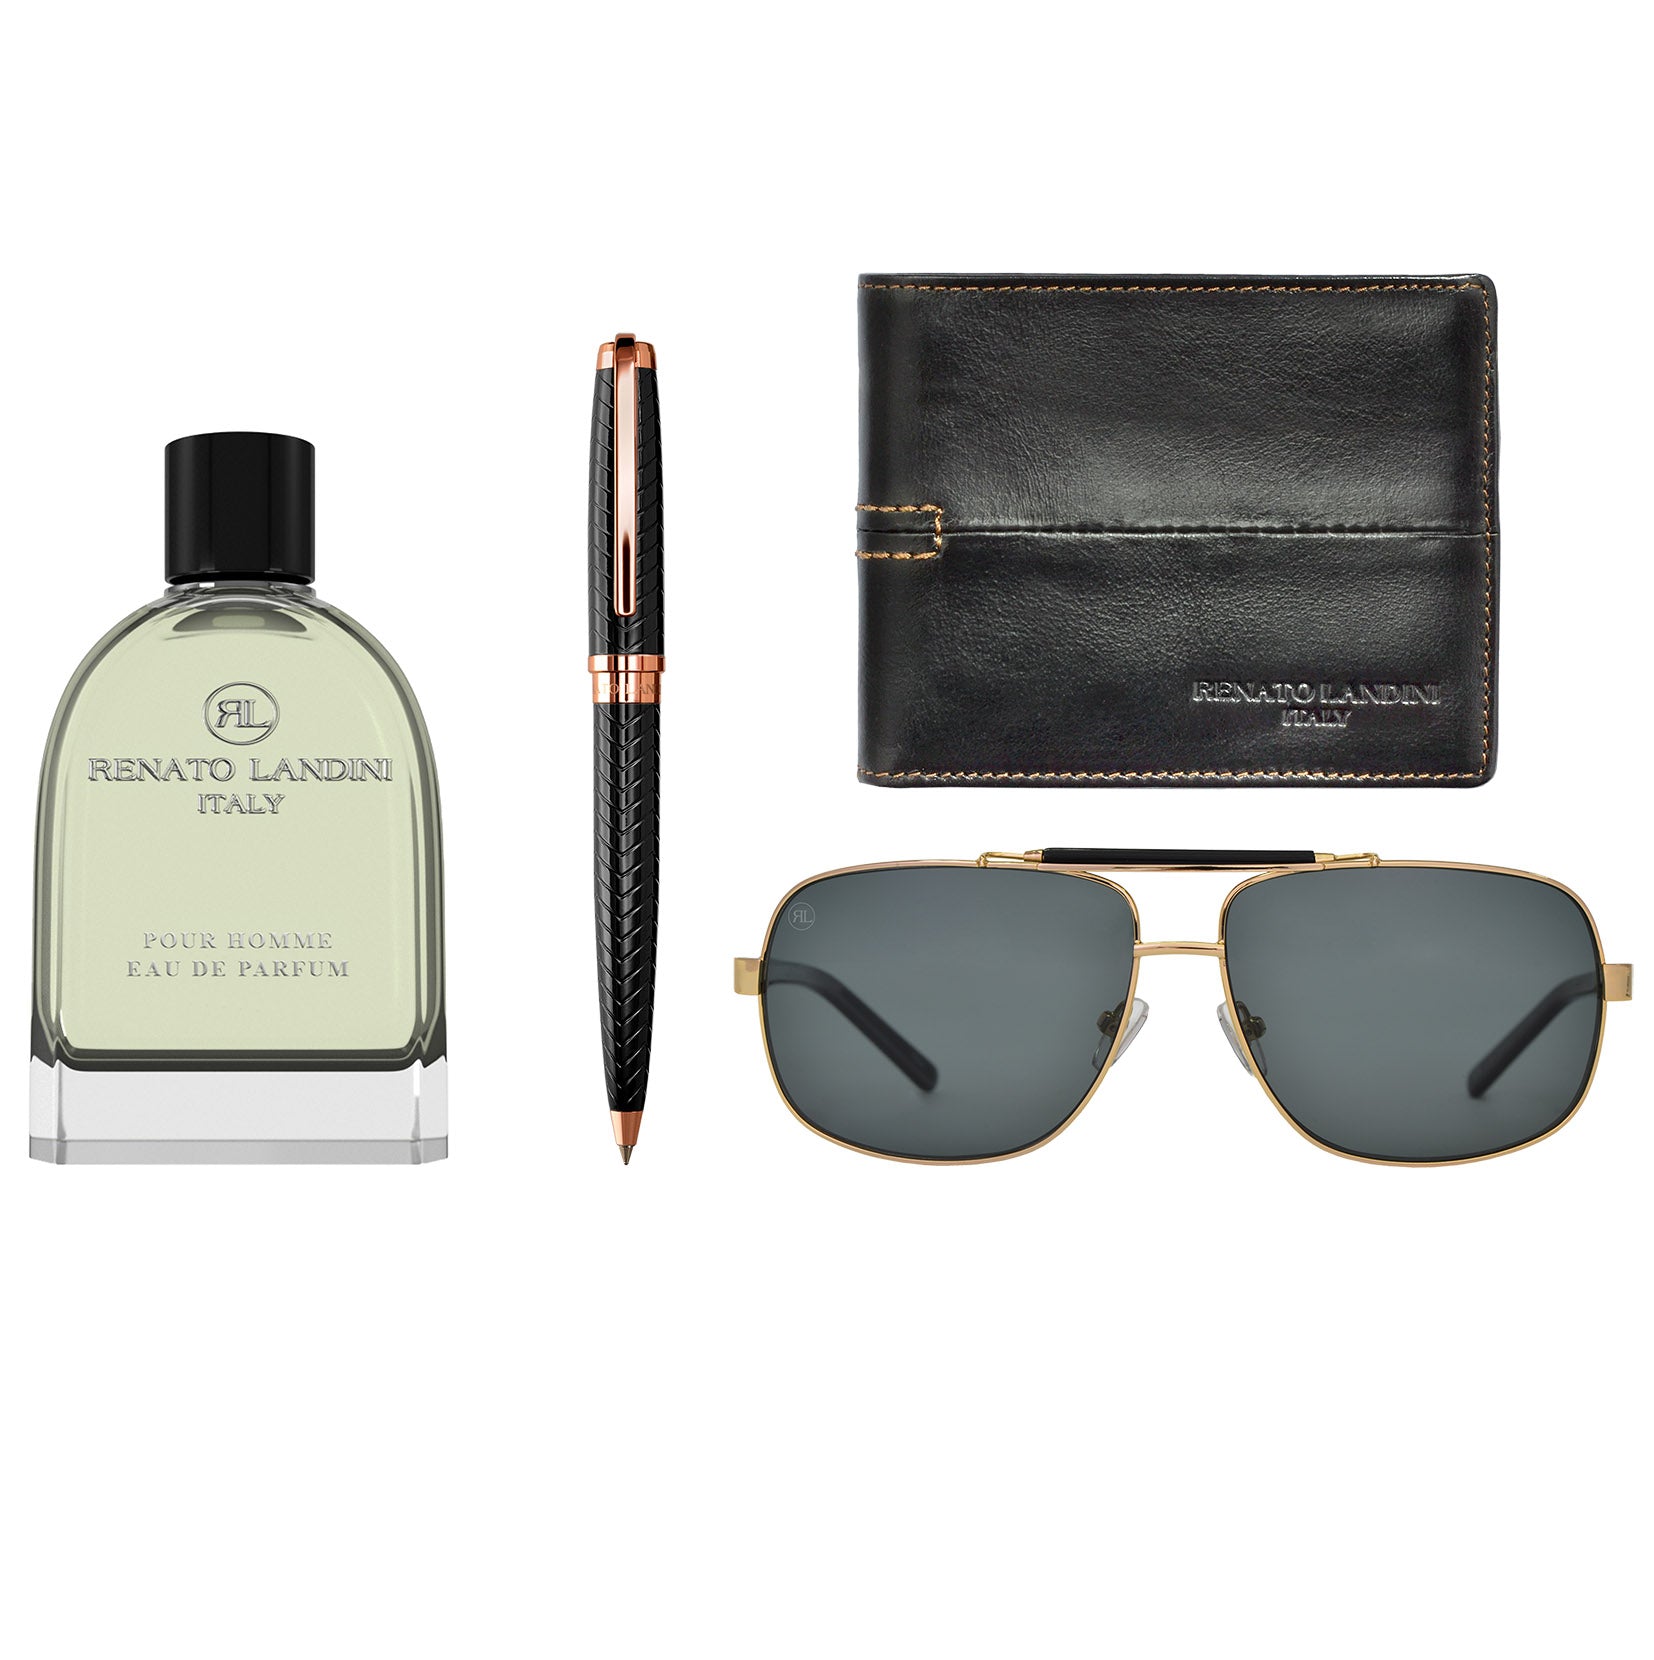 RENATO LANDINI Pen + Wallet + Sunglasses + Perfume/ Men